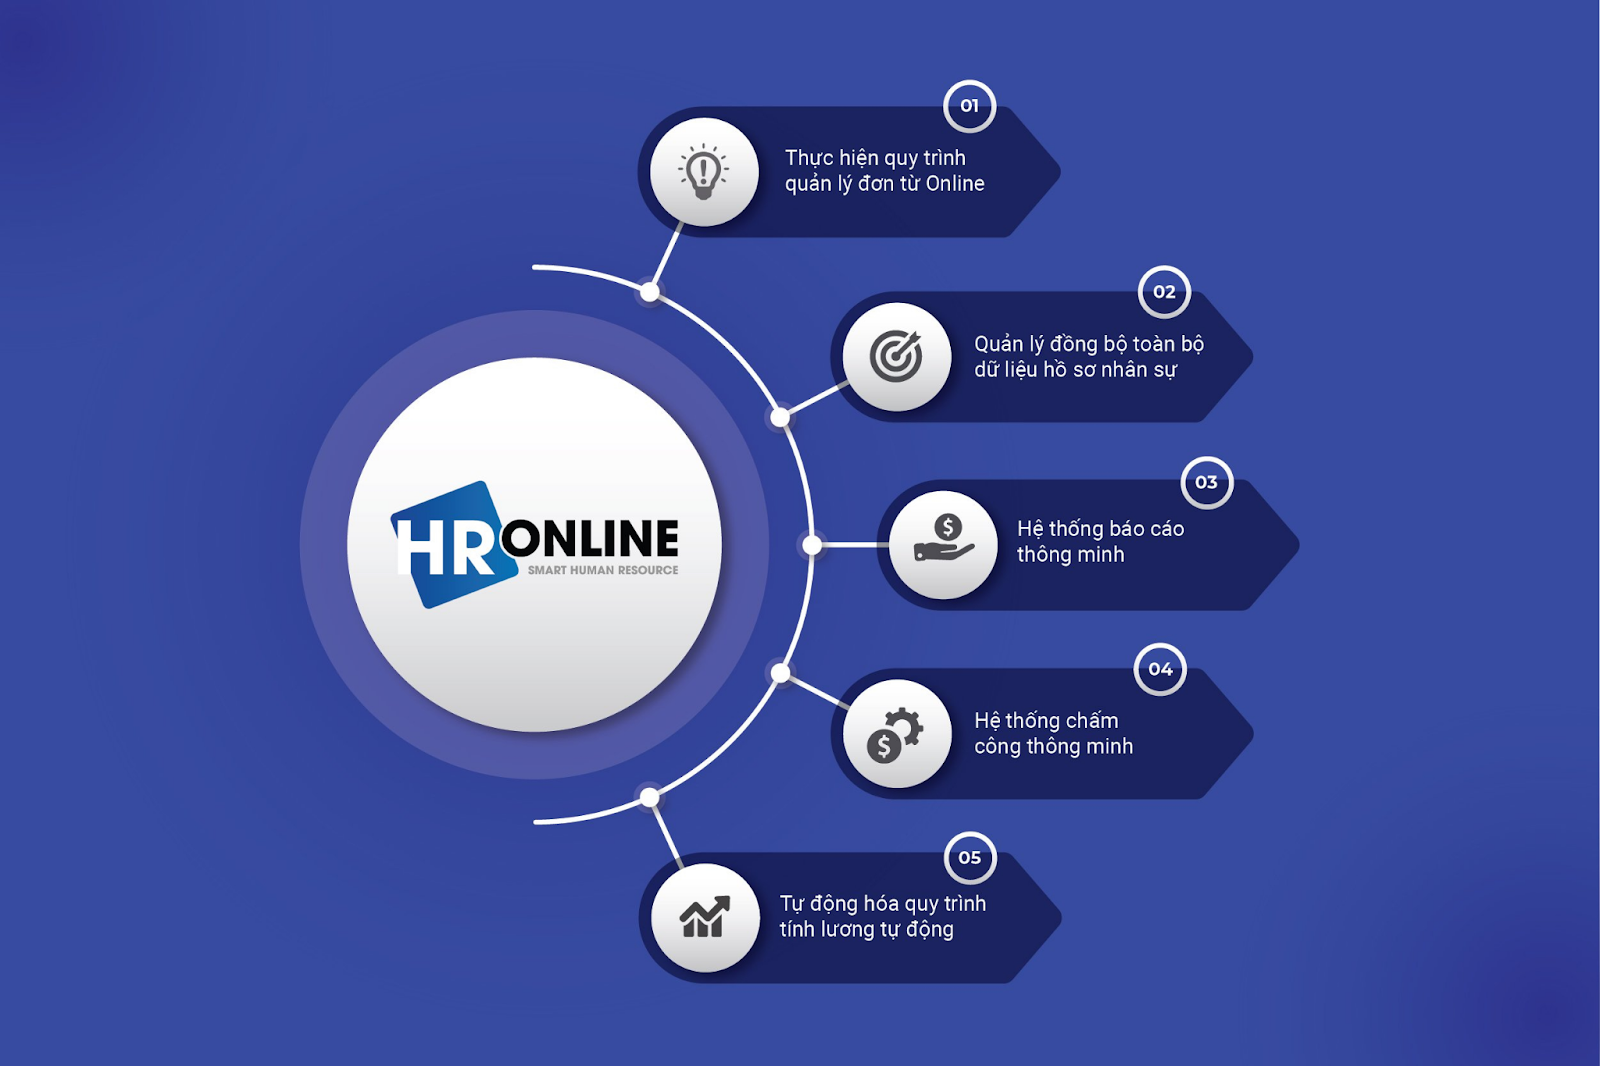 HrOnline - Nền tảng quản lý nhân sự toàn diện hàng đầu trên thị trường